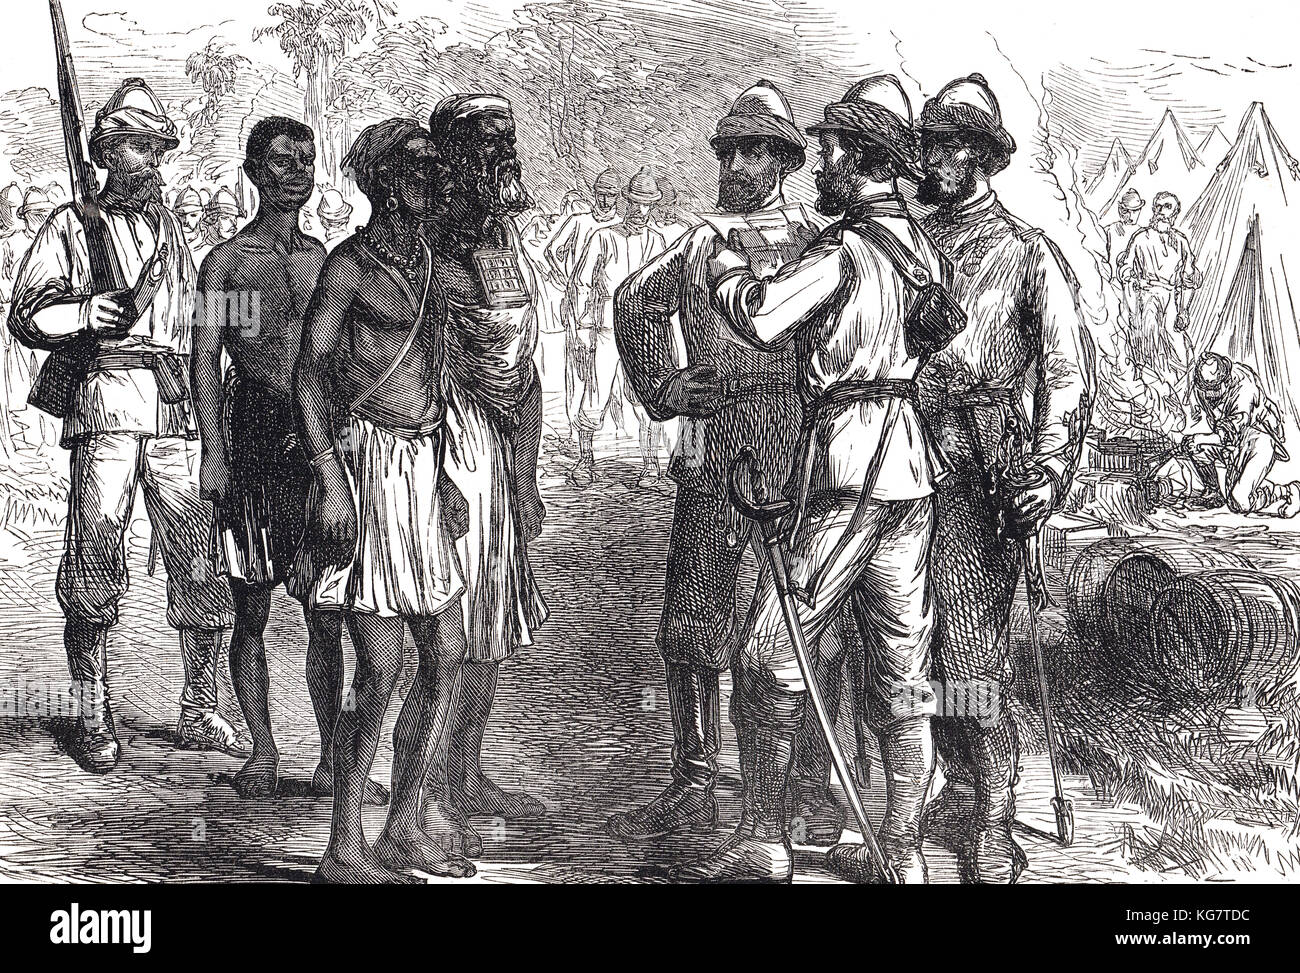 Tréception des ambassadeurs du roi Koffee dans le camp anglais, troisième guerre anglo-Ashanti, première expédition Ashanti, 1873-1874 Banque D'Images